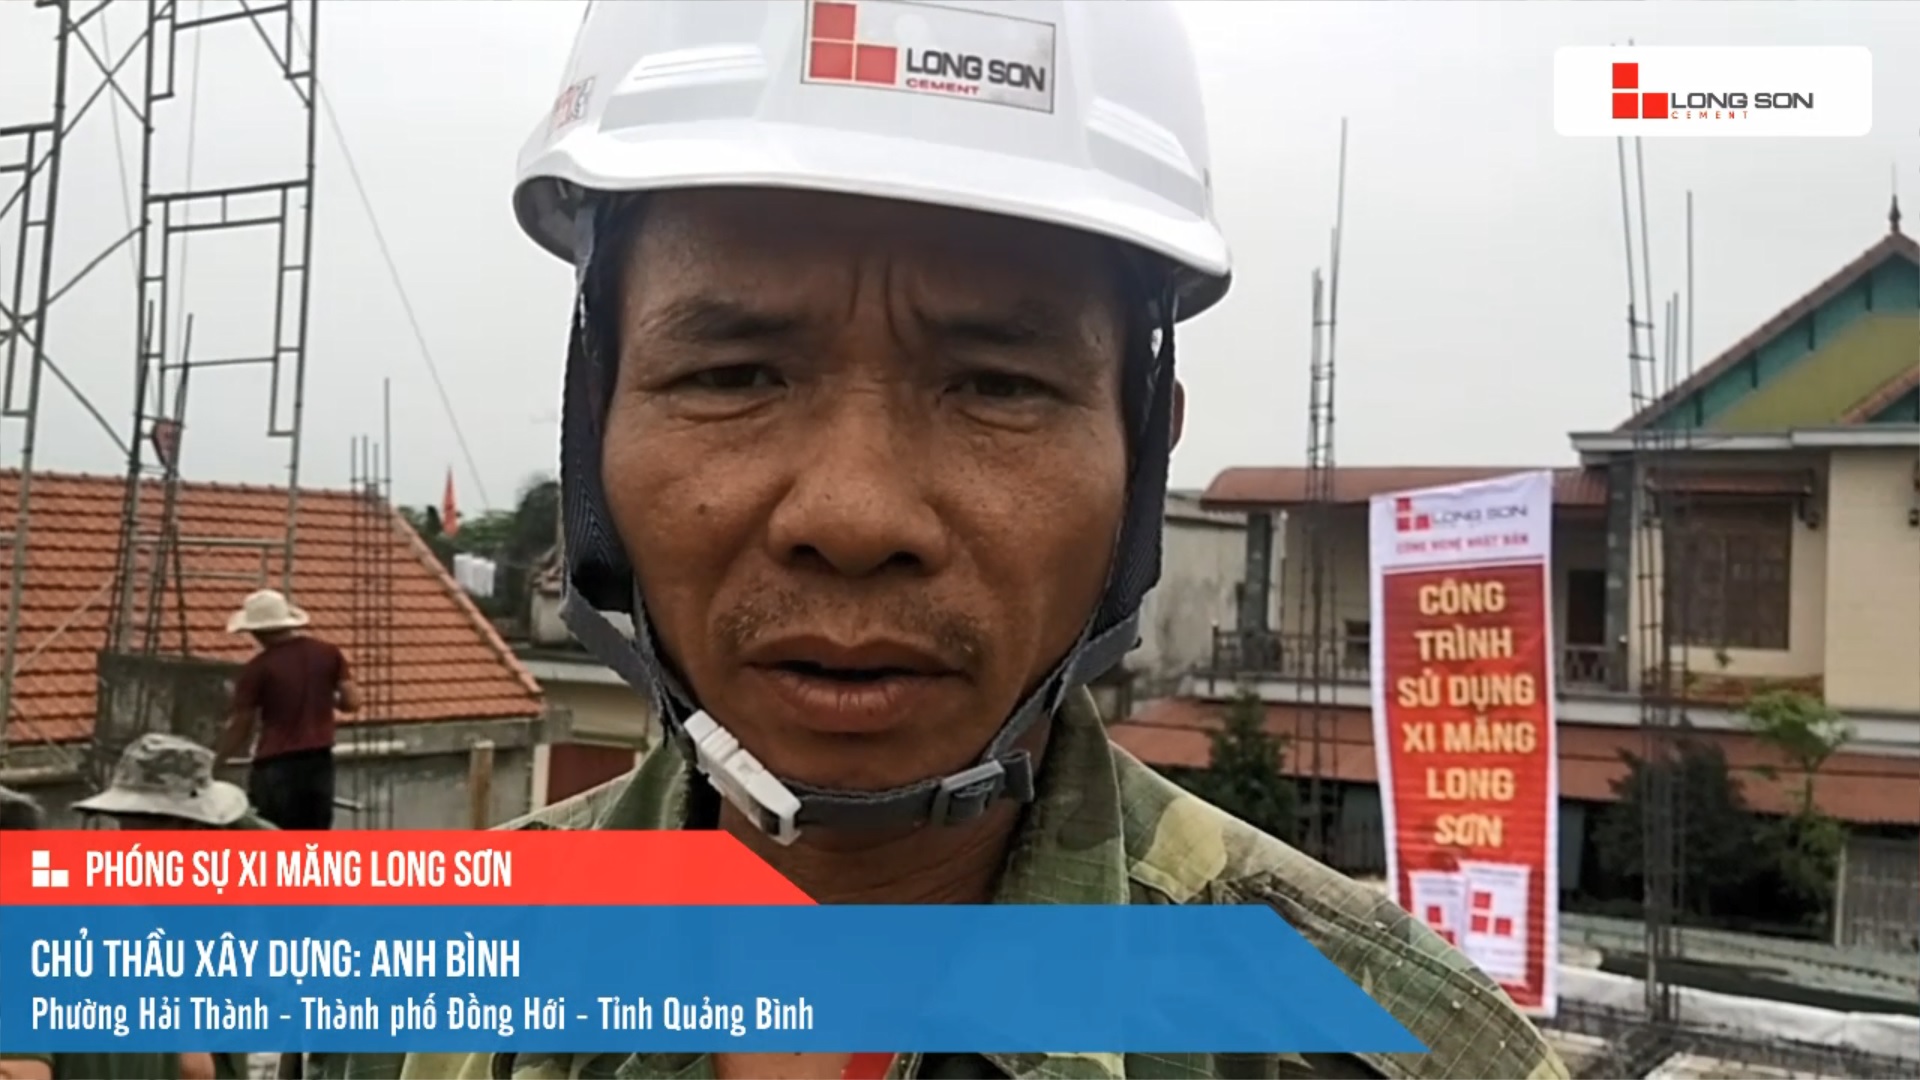 Phóng sự công trình sử dụng Xi măng Long Sơn tại Quảng Bình 16.03.2021